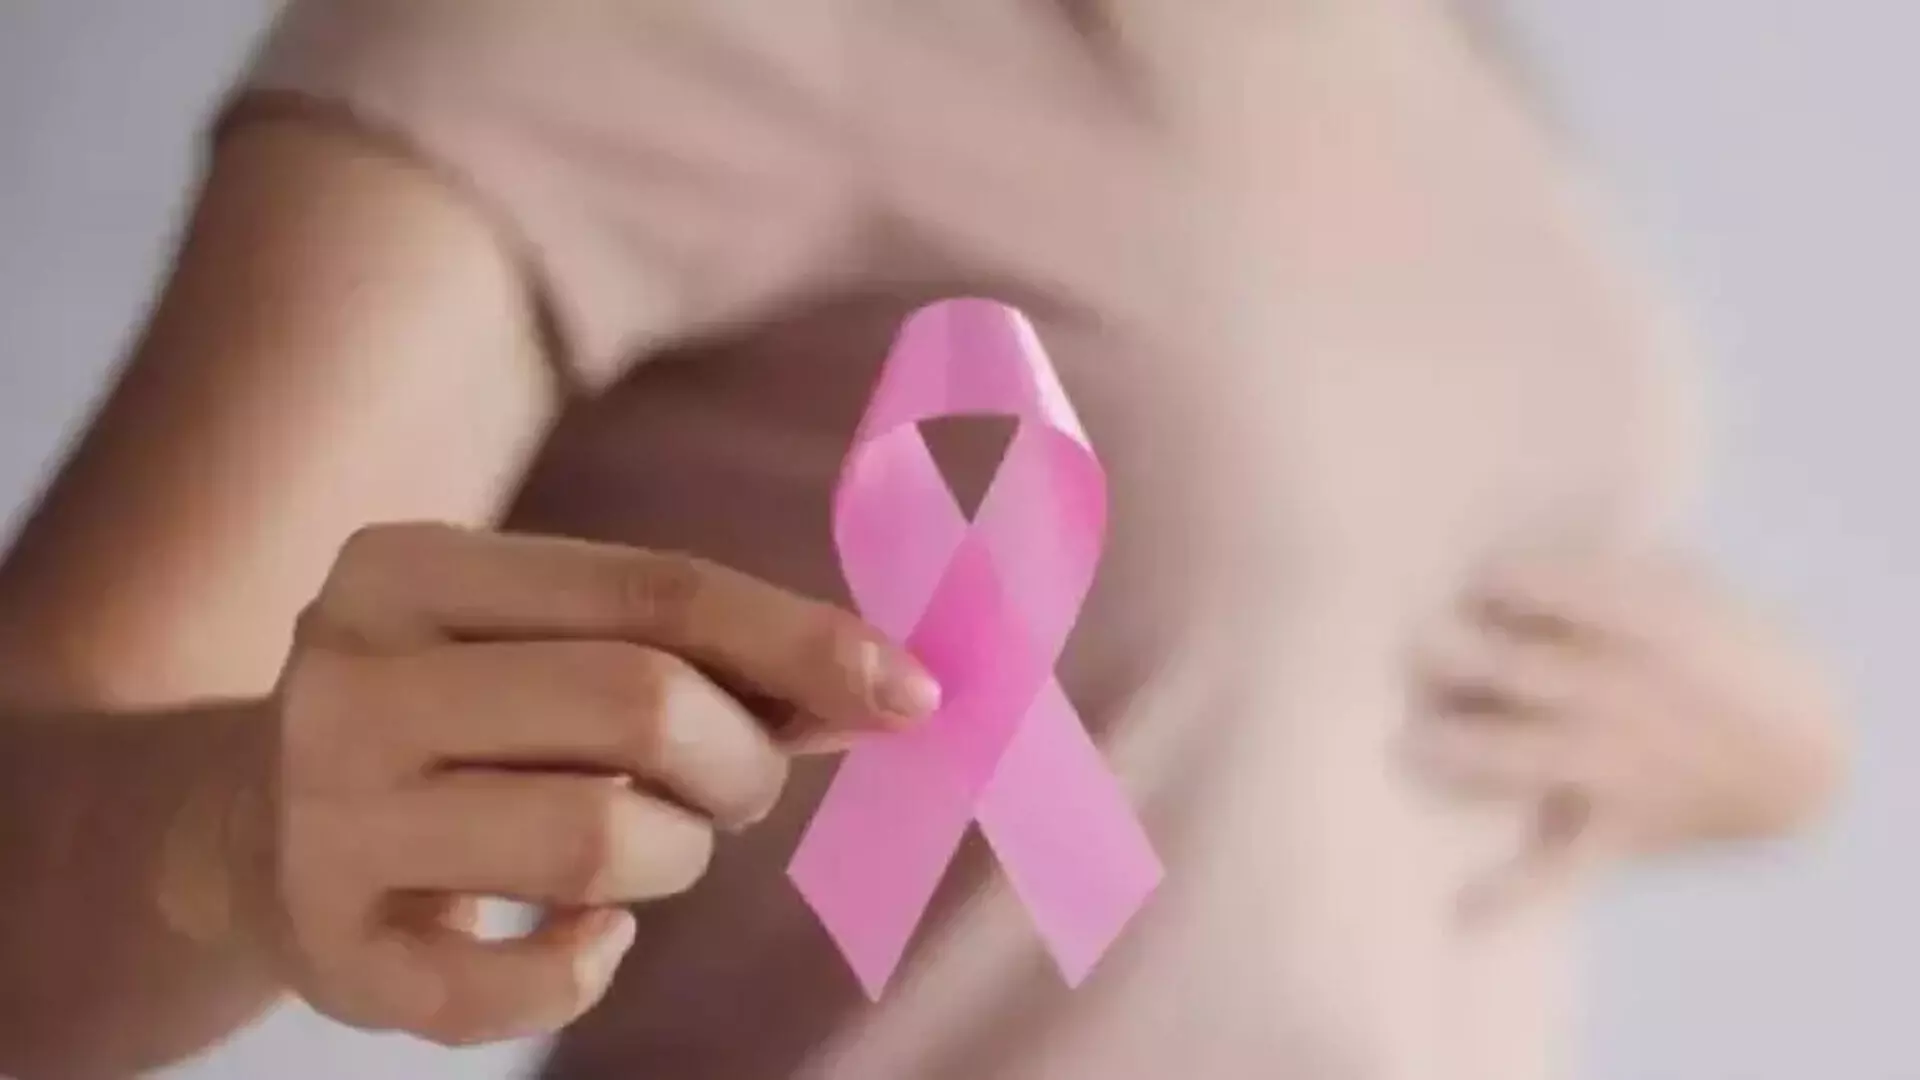 शोधकर्ता स्तन कैंसर का पता लगाने के बारे में अधिक जानकारी दे रहे